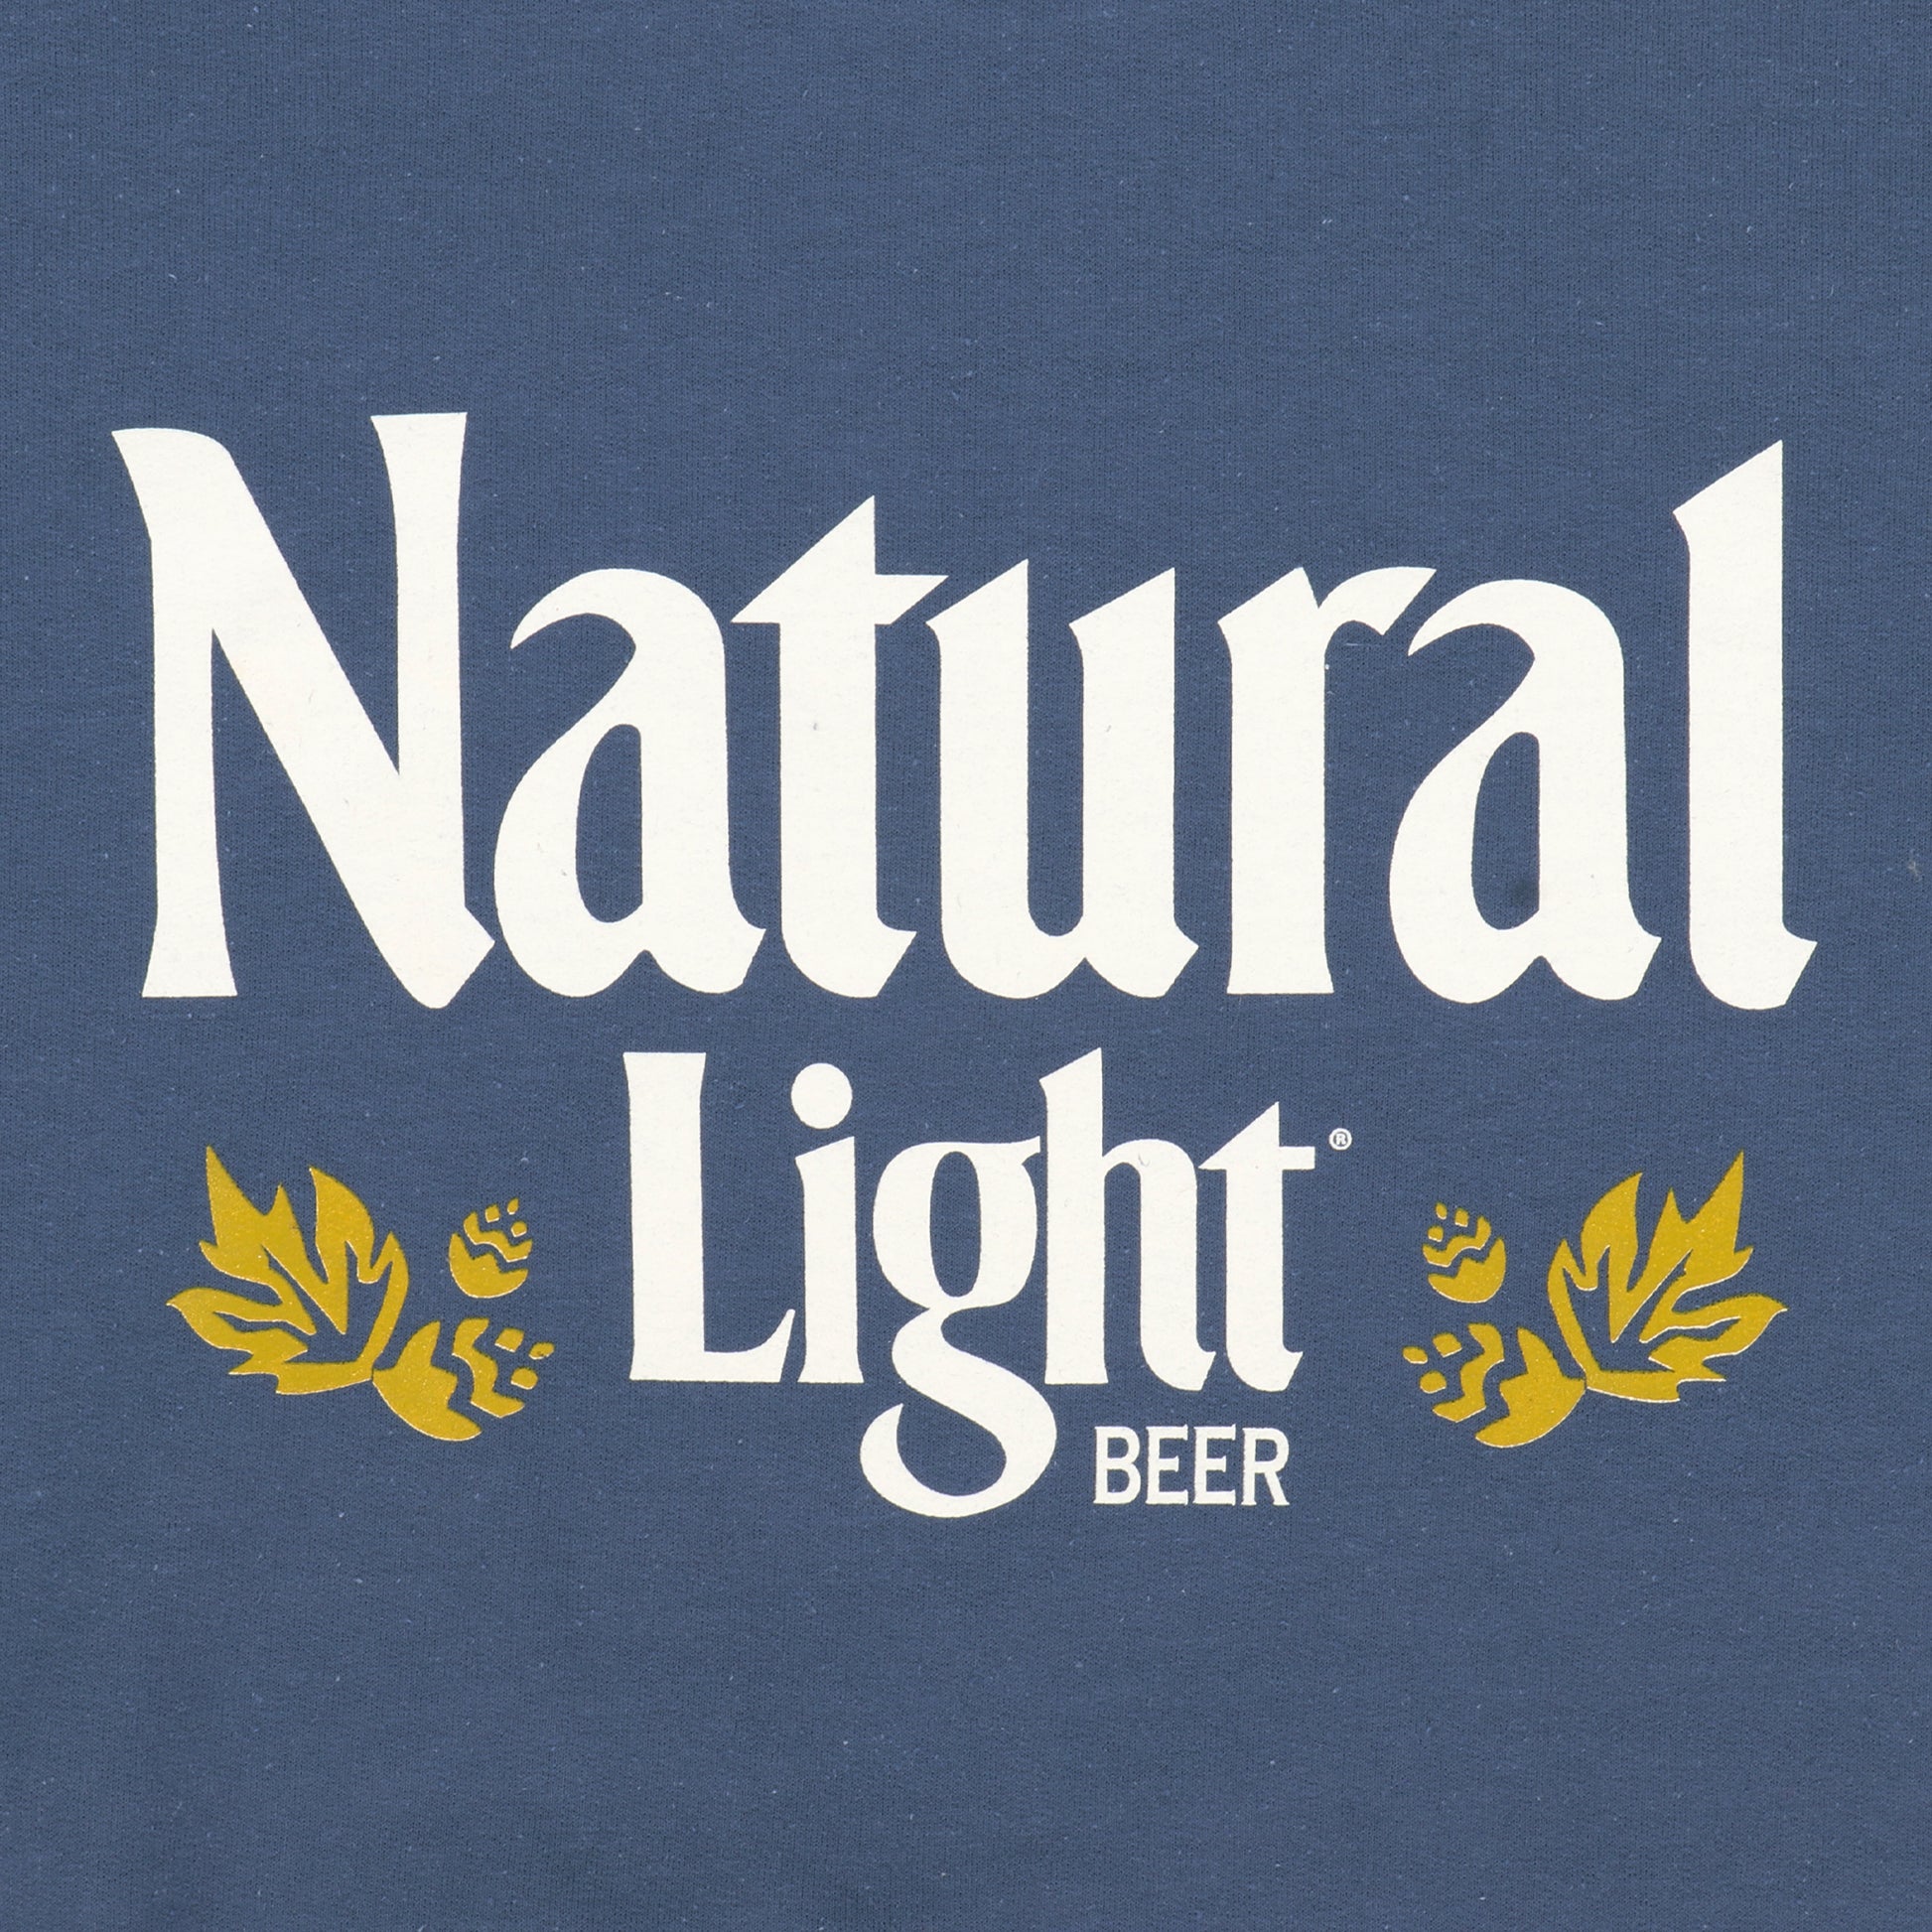 Close up of Natural Light logo on navy crewneck